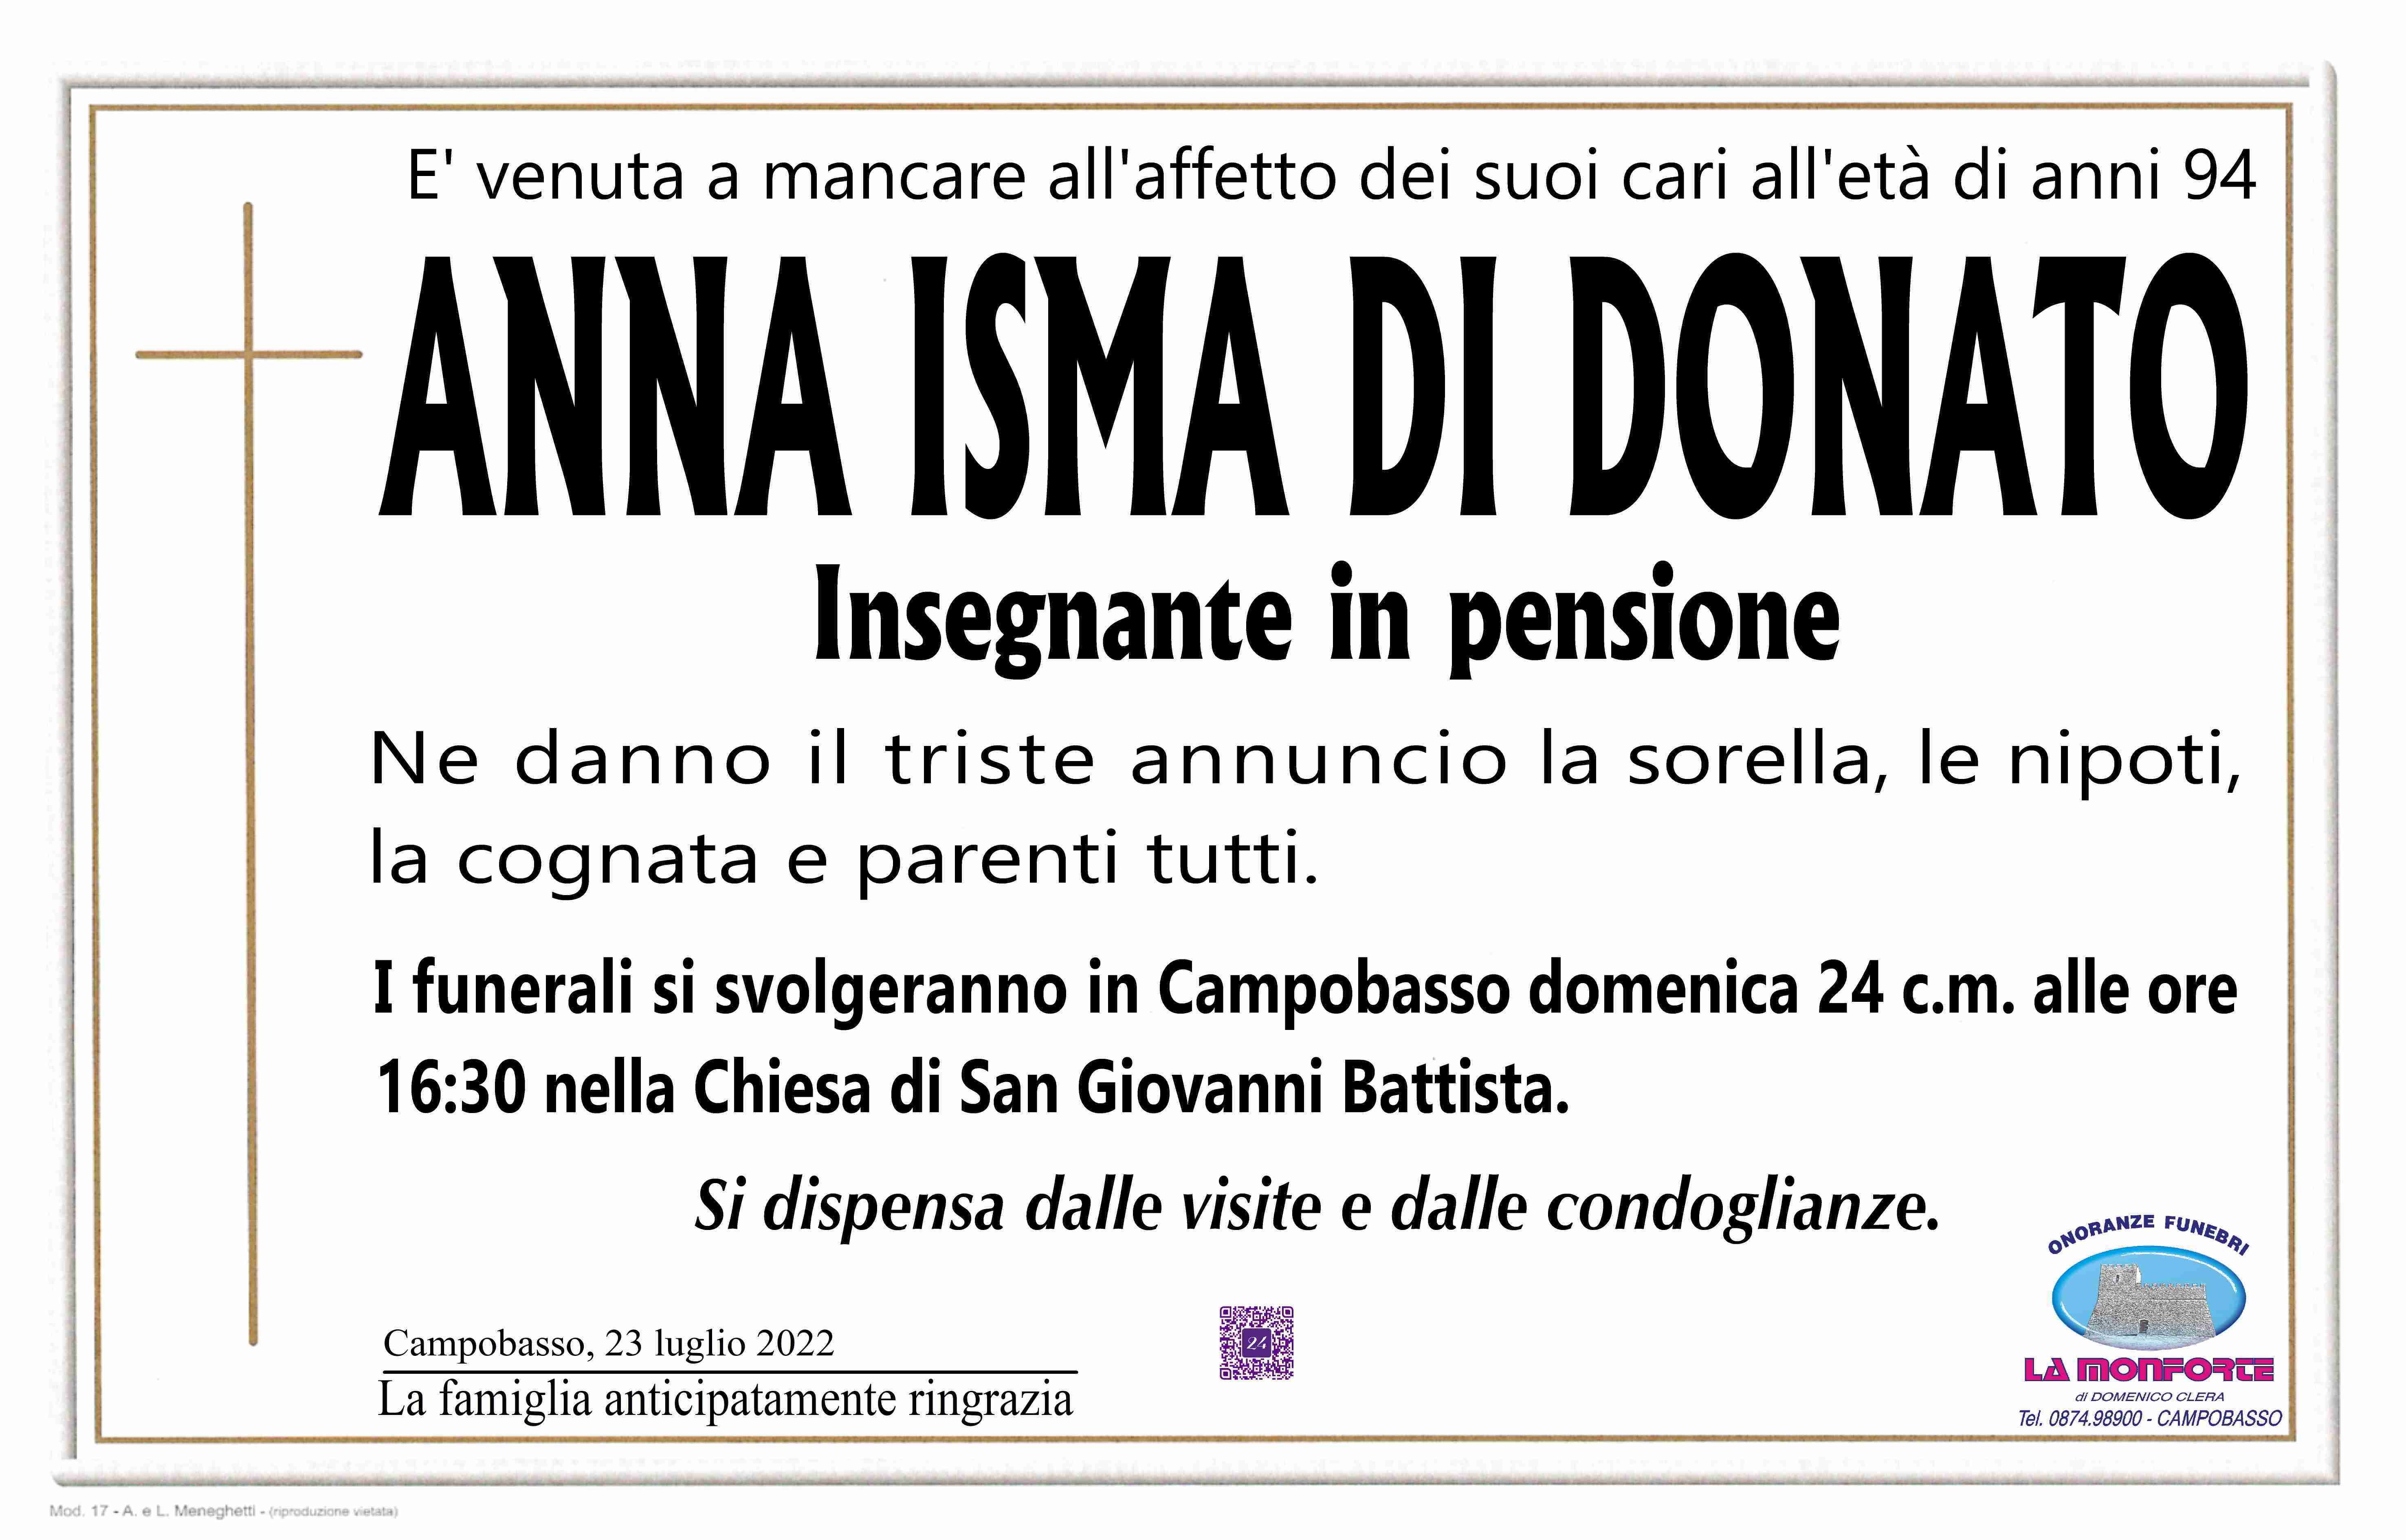 Anna Isma Di Donato